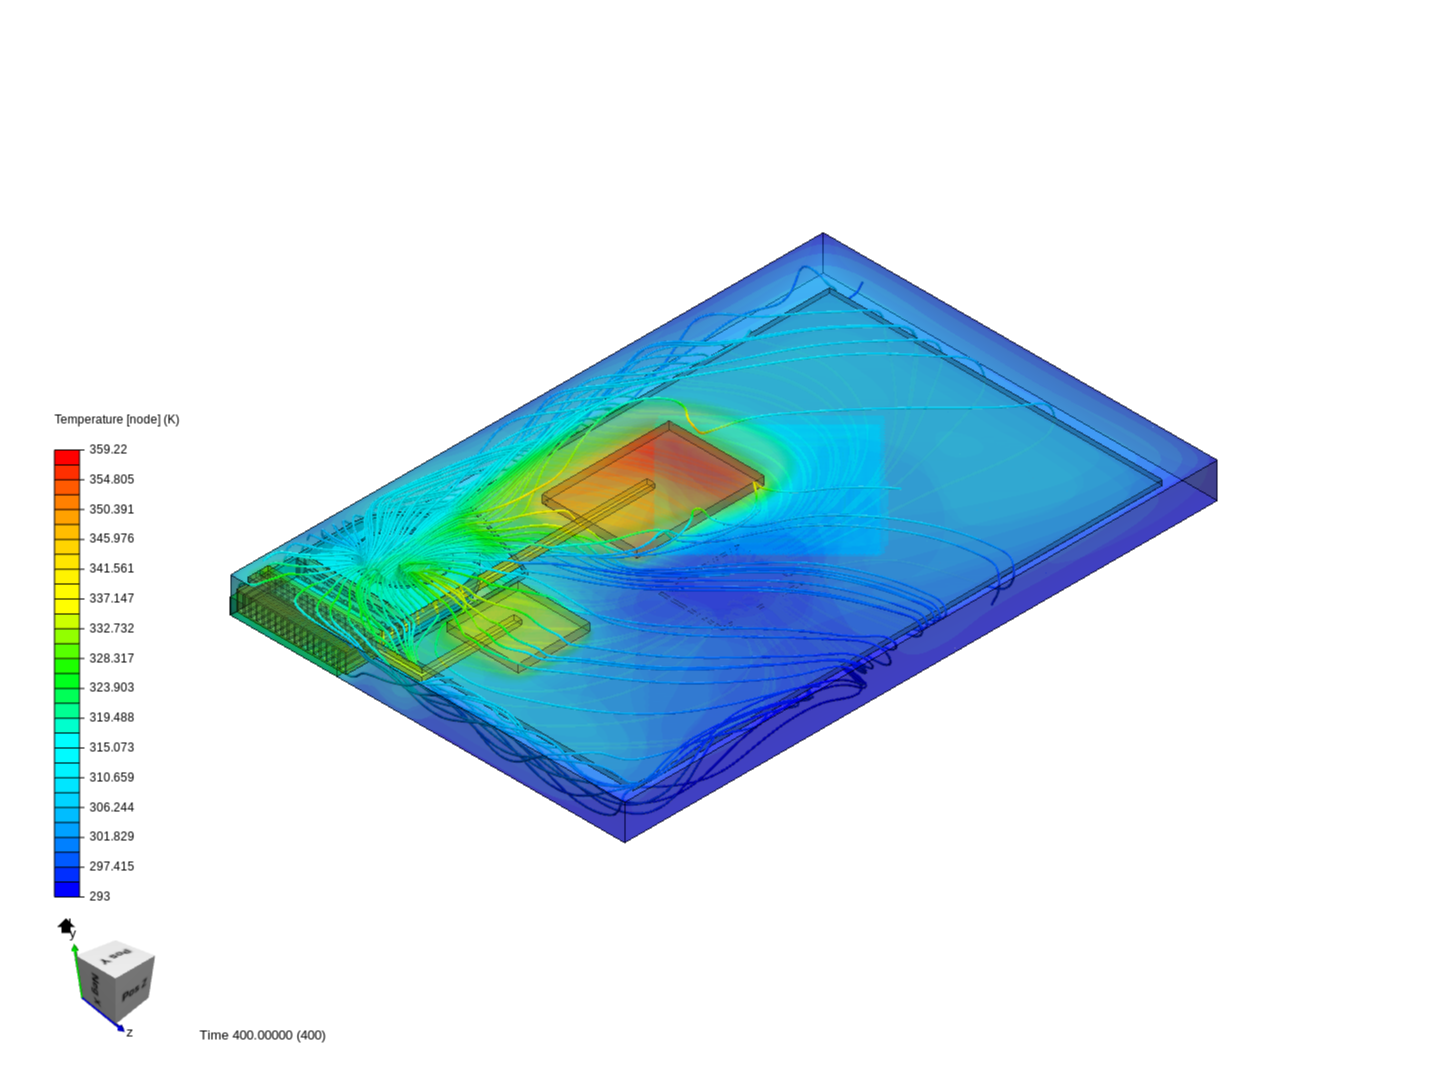 thermal analysis of laptop cooling image